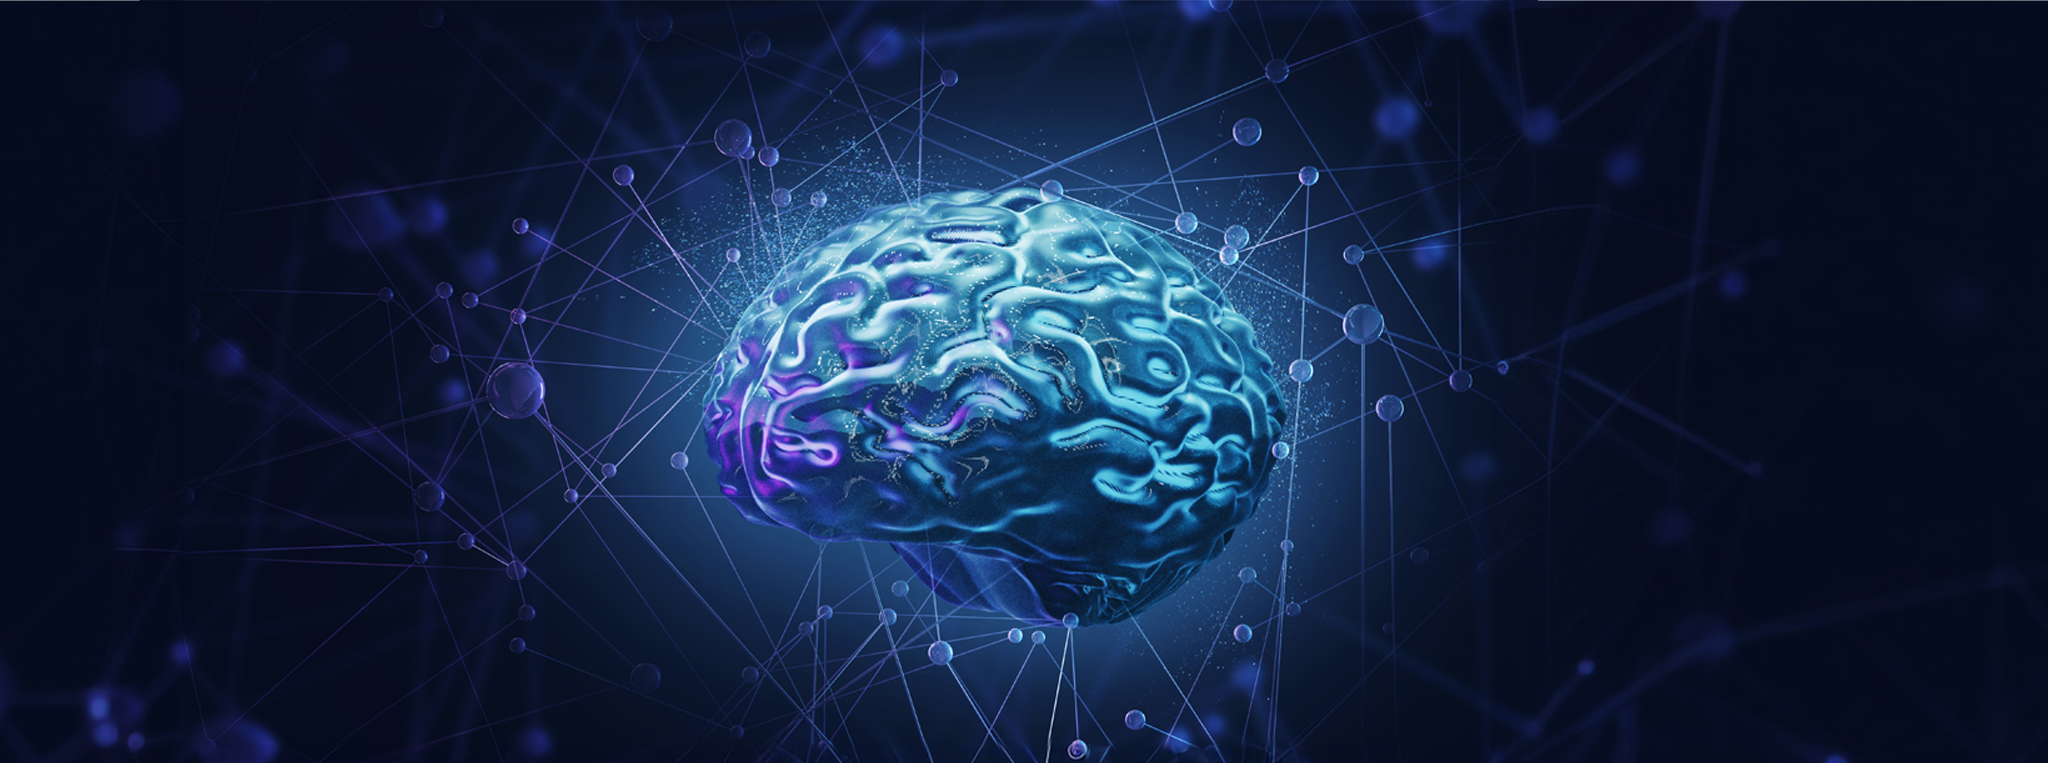 Eine Visualisierung eines neuronalen Netzwerks anhand eines menschlichen Gehirns in blauer Farbe. 